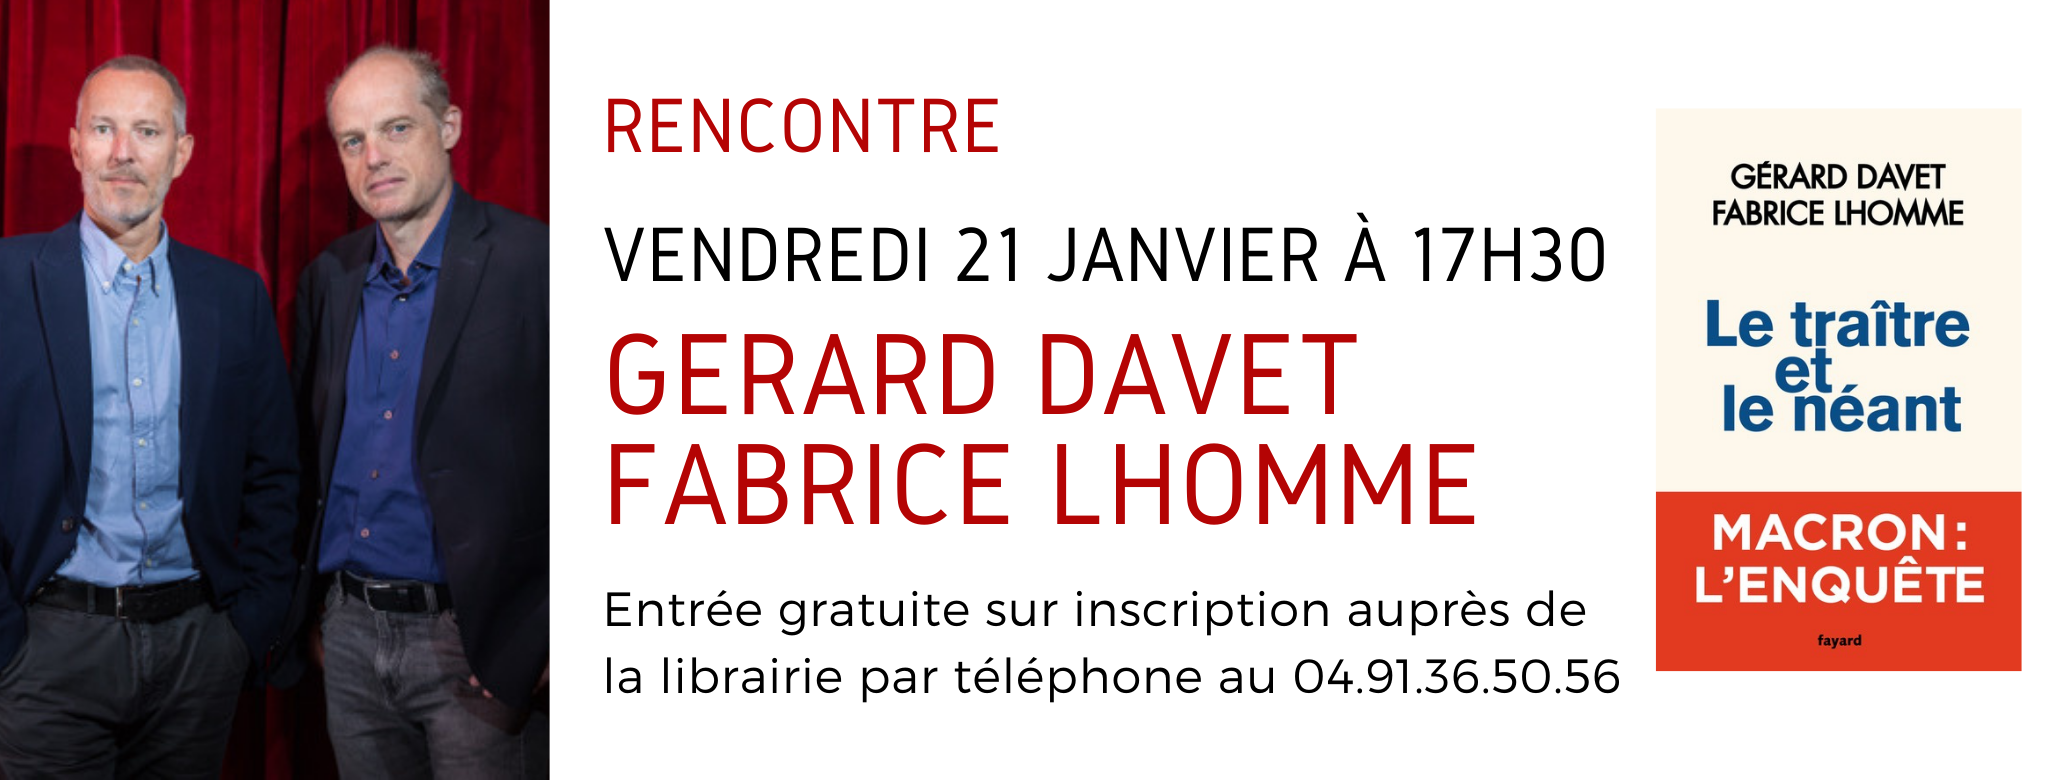 Rencontre Gérard Davet et Fabrice Lhomme